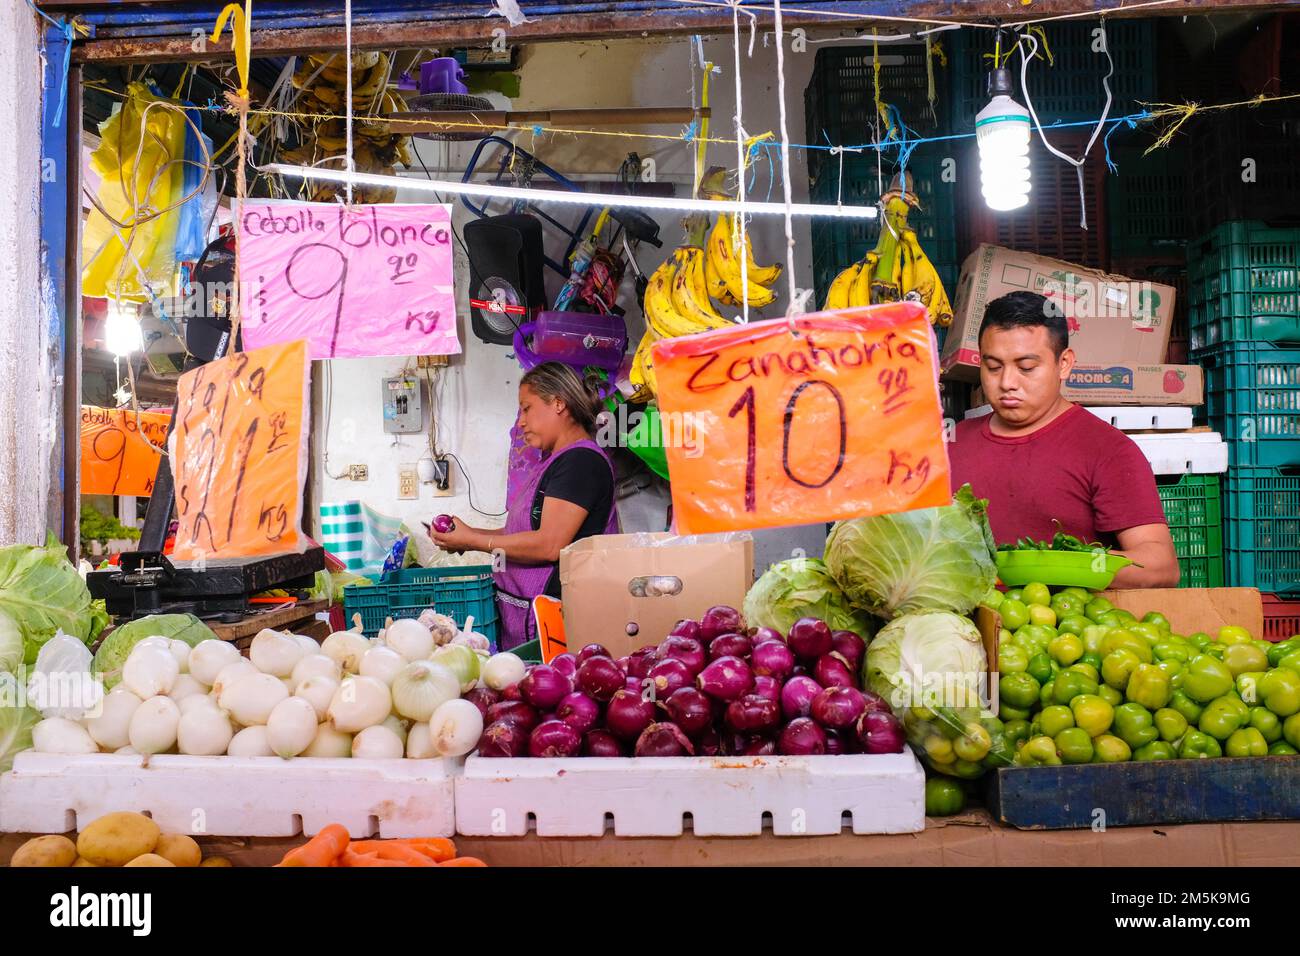 Vegetable vendor at the Lucas de Galvez Market in the center of Merida, Yucatan, Mexico Stock Photo